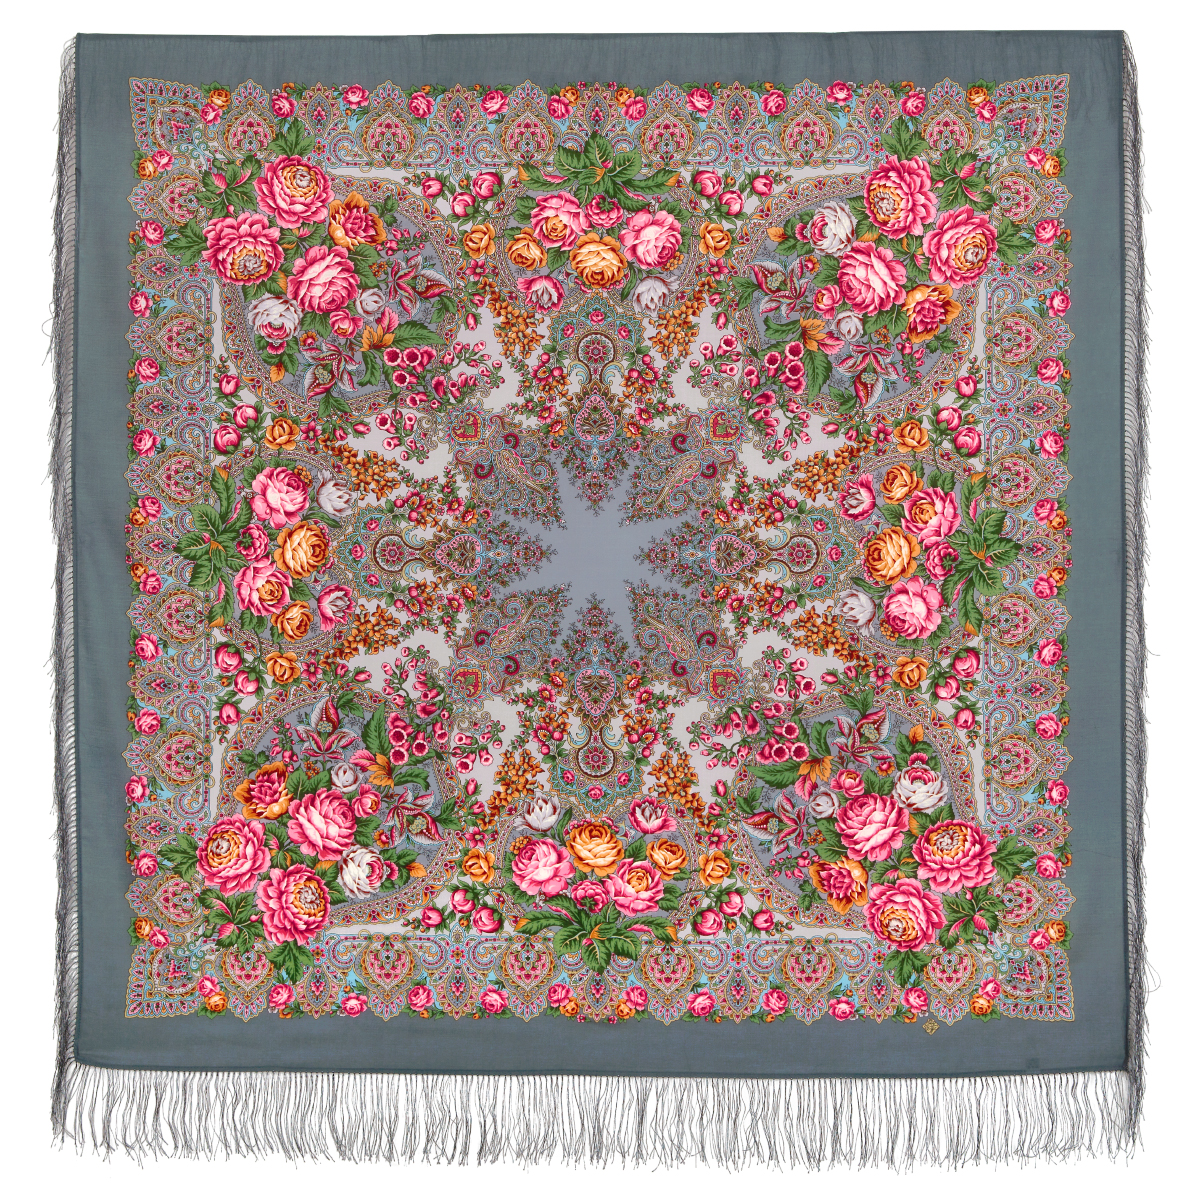 Платок женский Павловопосадская платочная мануфактура 1724 серый/розовый, 146х146 см